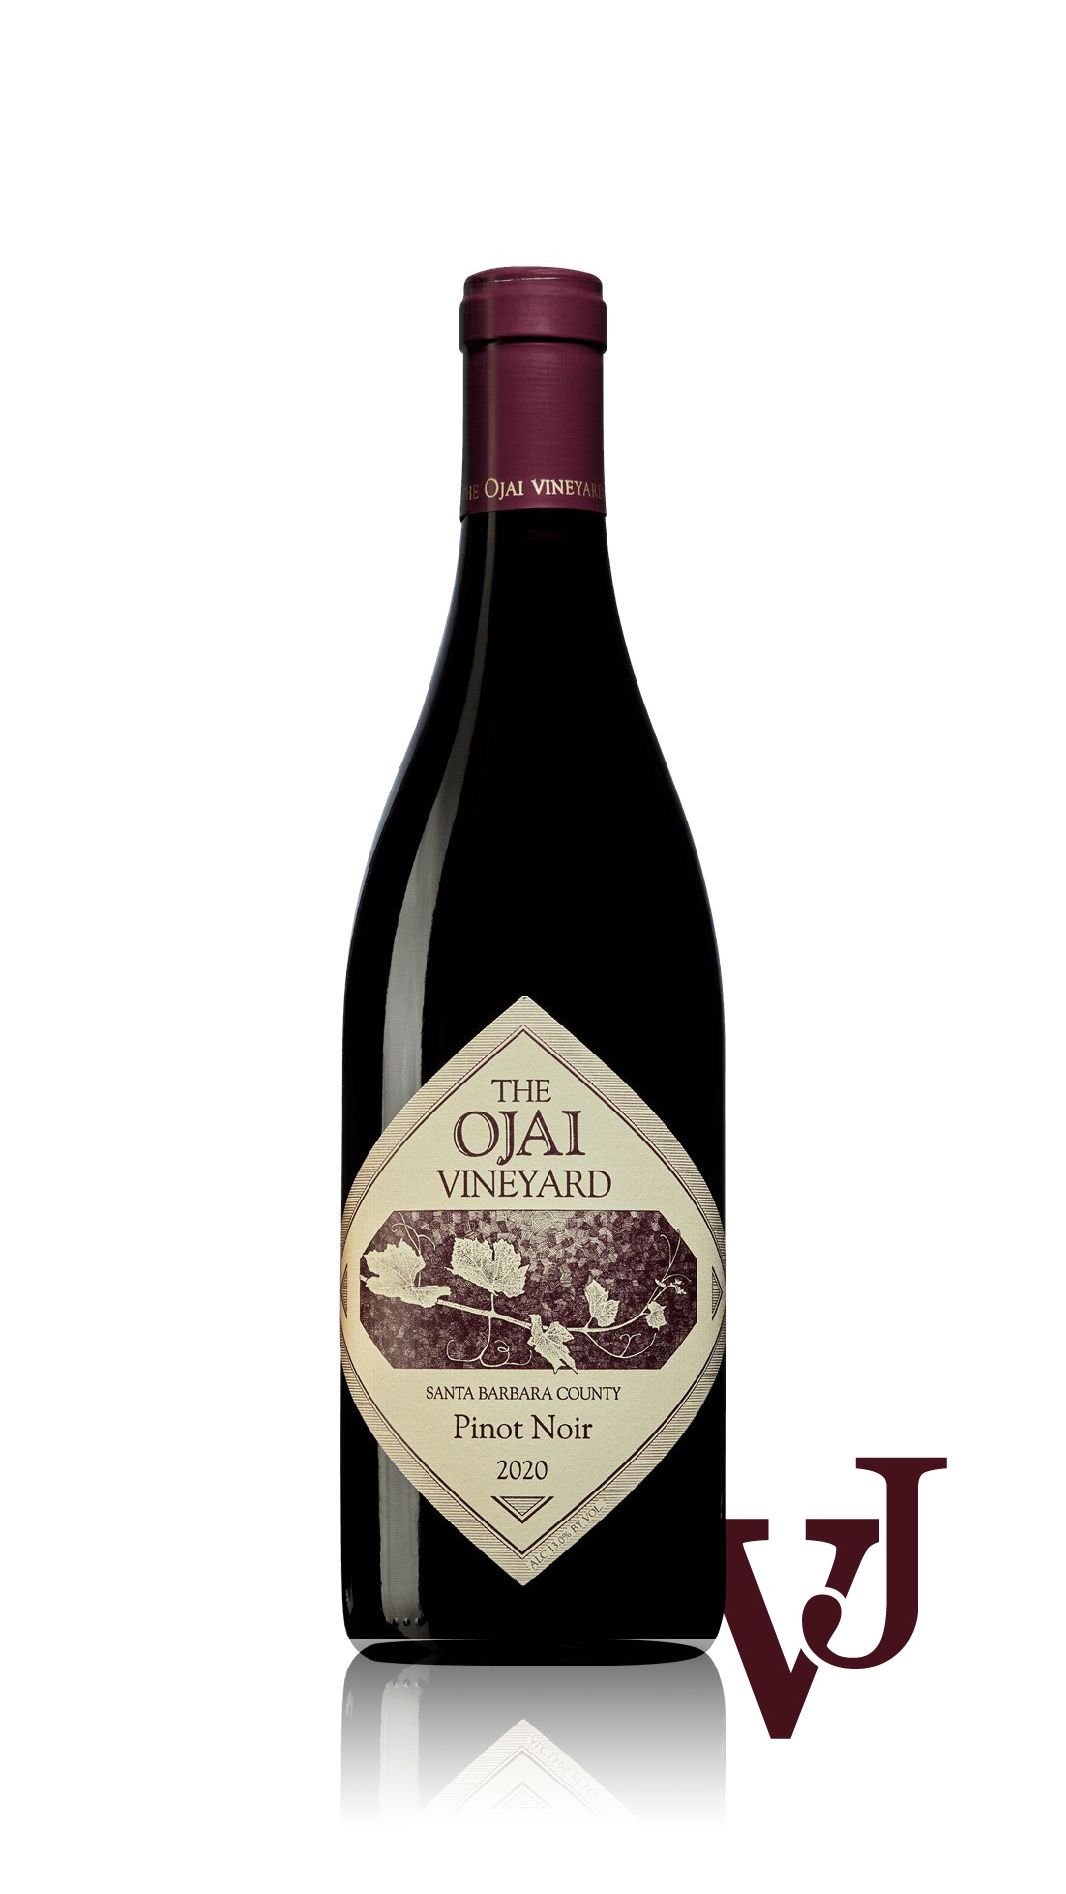 Rött Vin - Ojai Santa Barbara Pinot Noir artikel nummer 549701 från producenten Ojai Vineyard från området USA